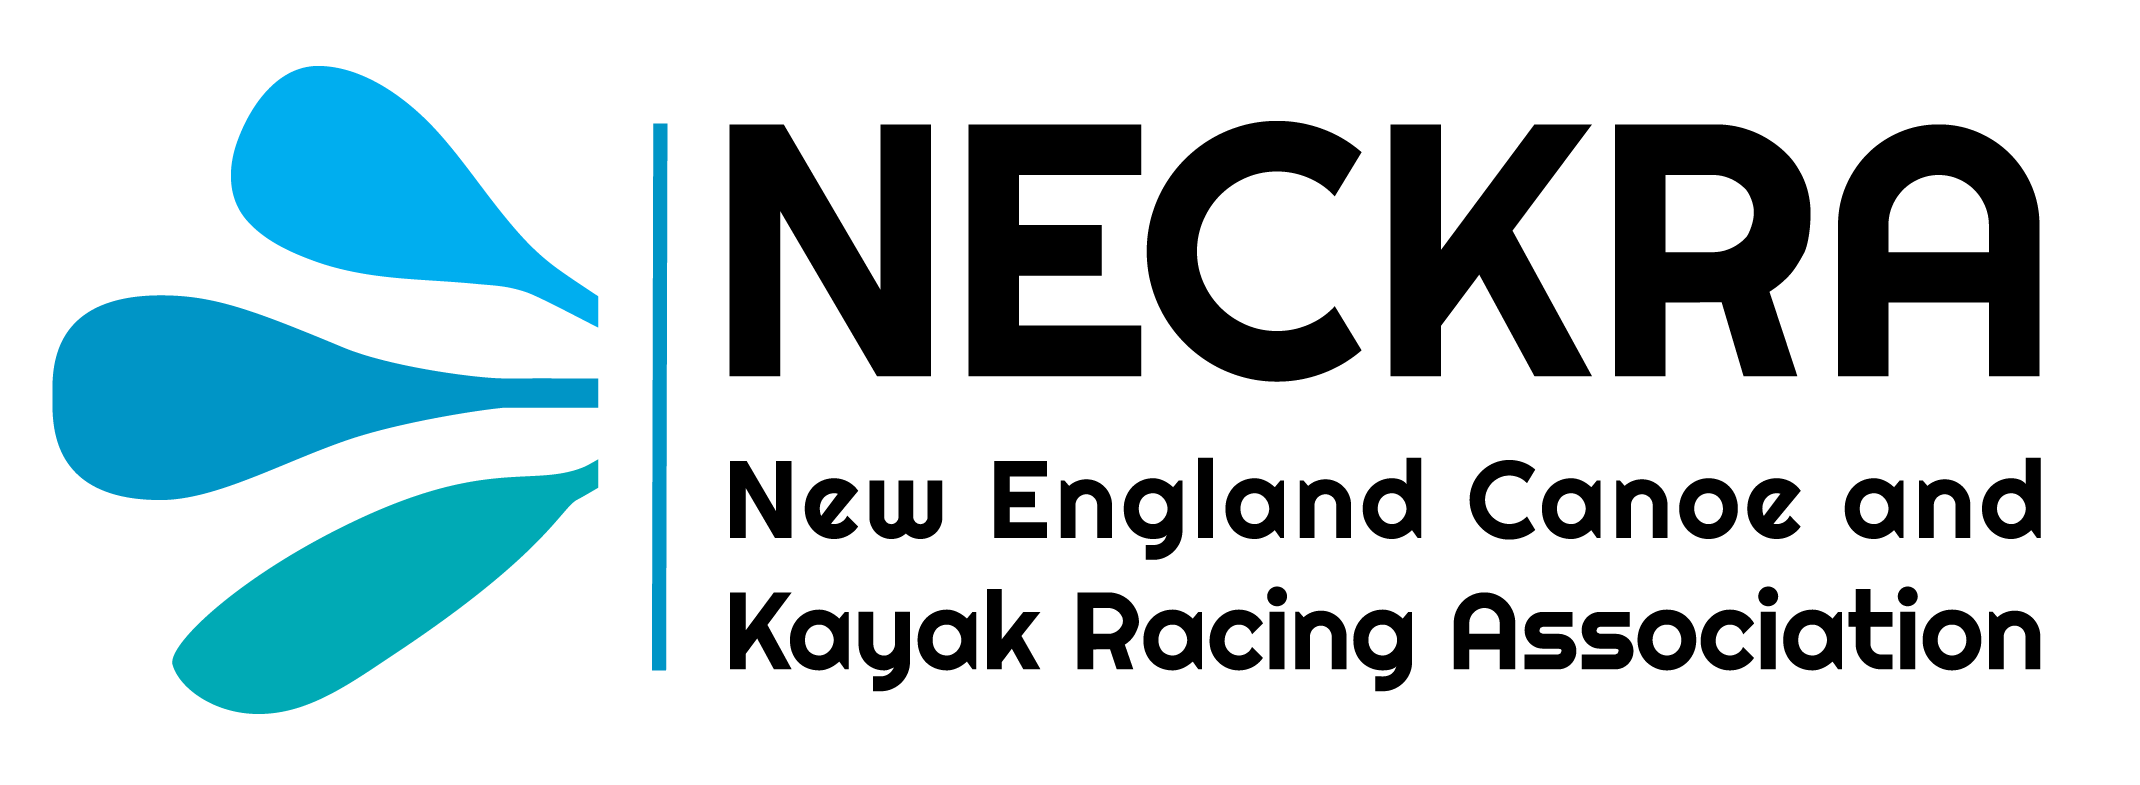 NECKRA logo_transparent background.png